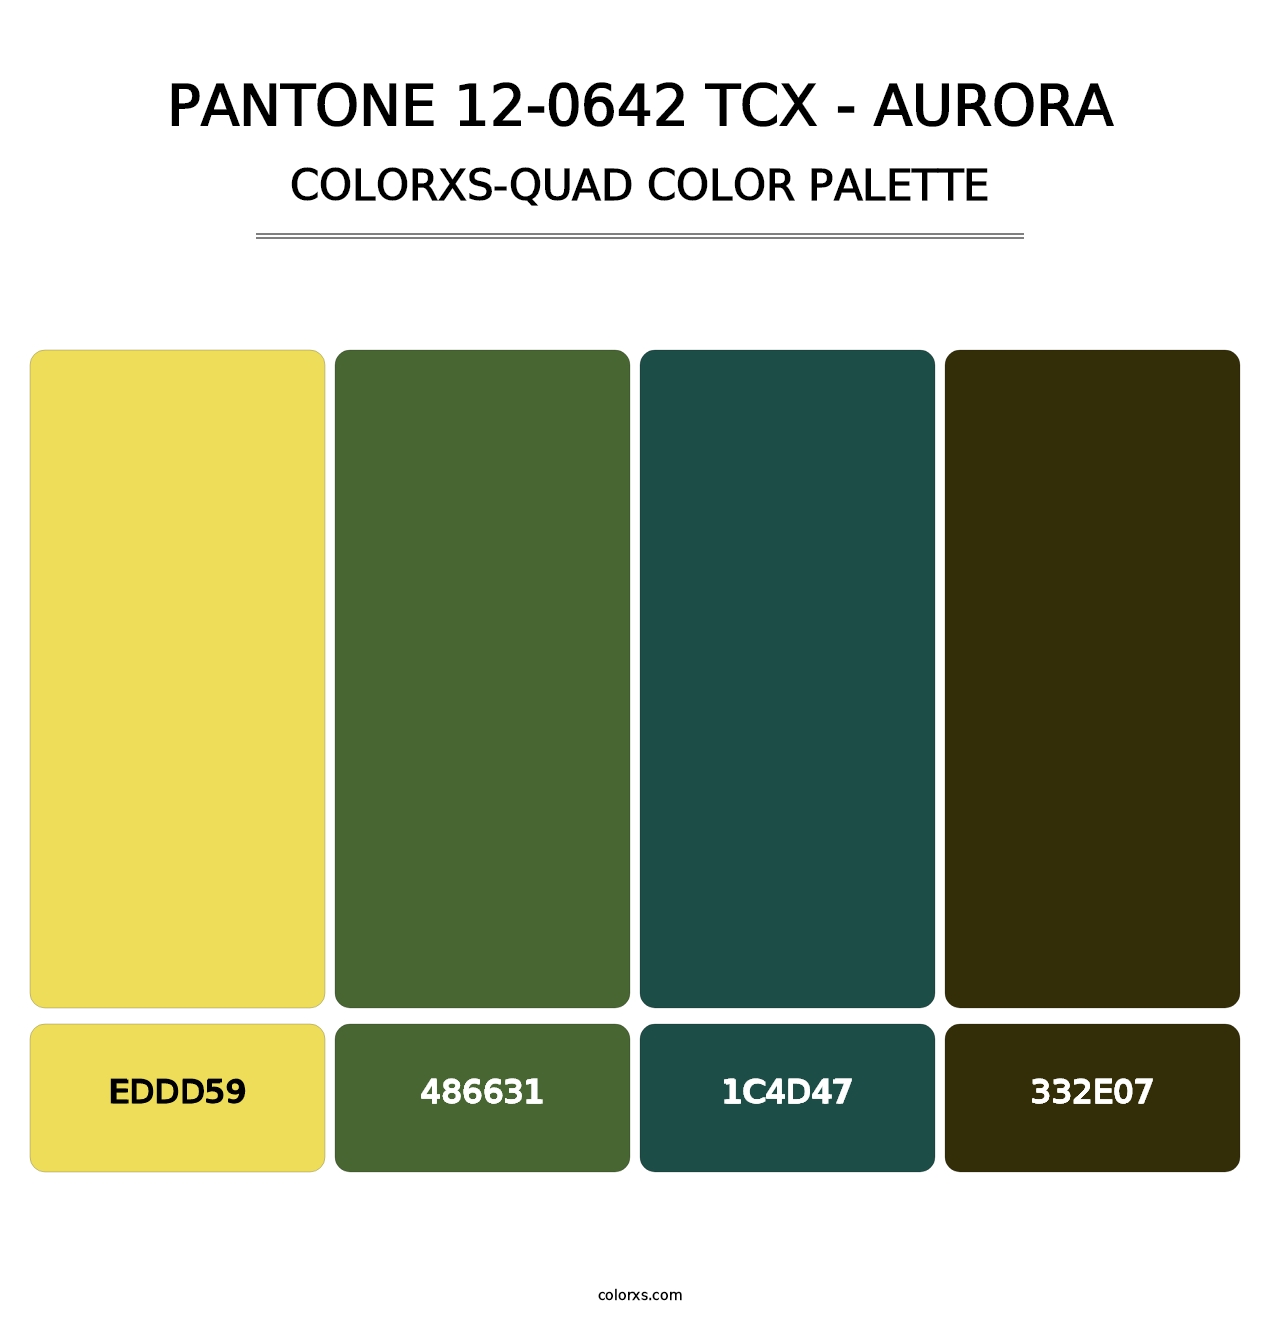 PANTONE 12-0642 TCX - Aurora - Colorxs Quad Palette